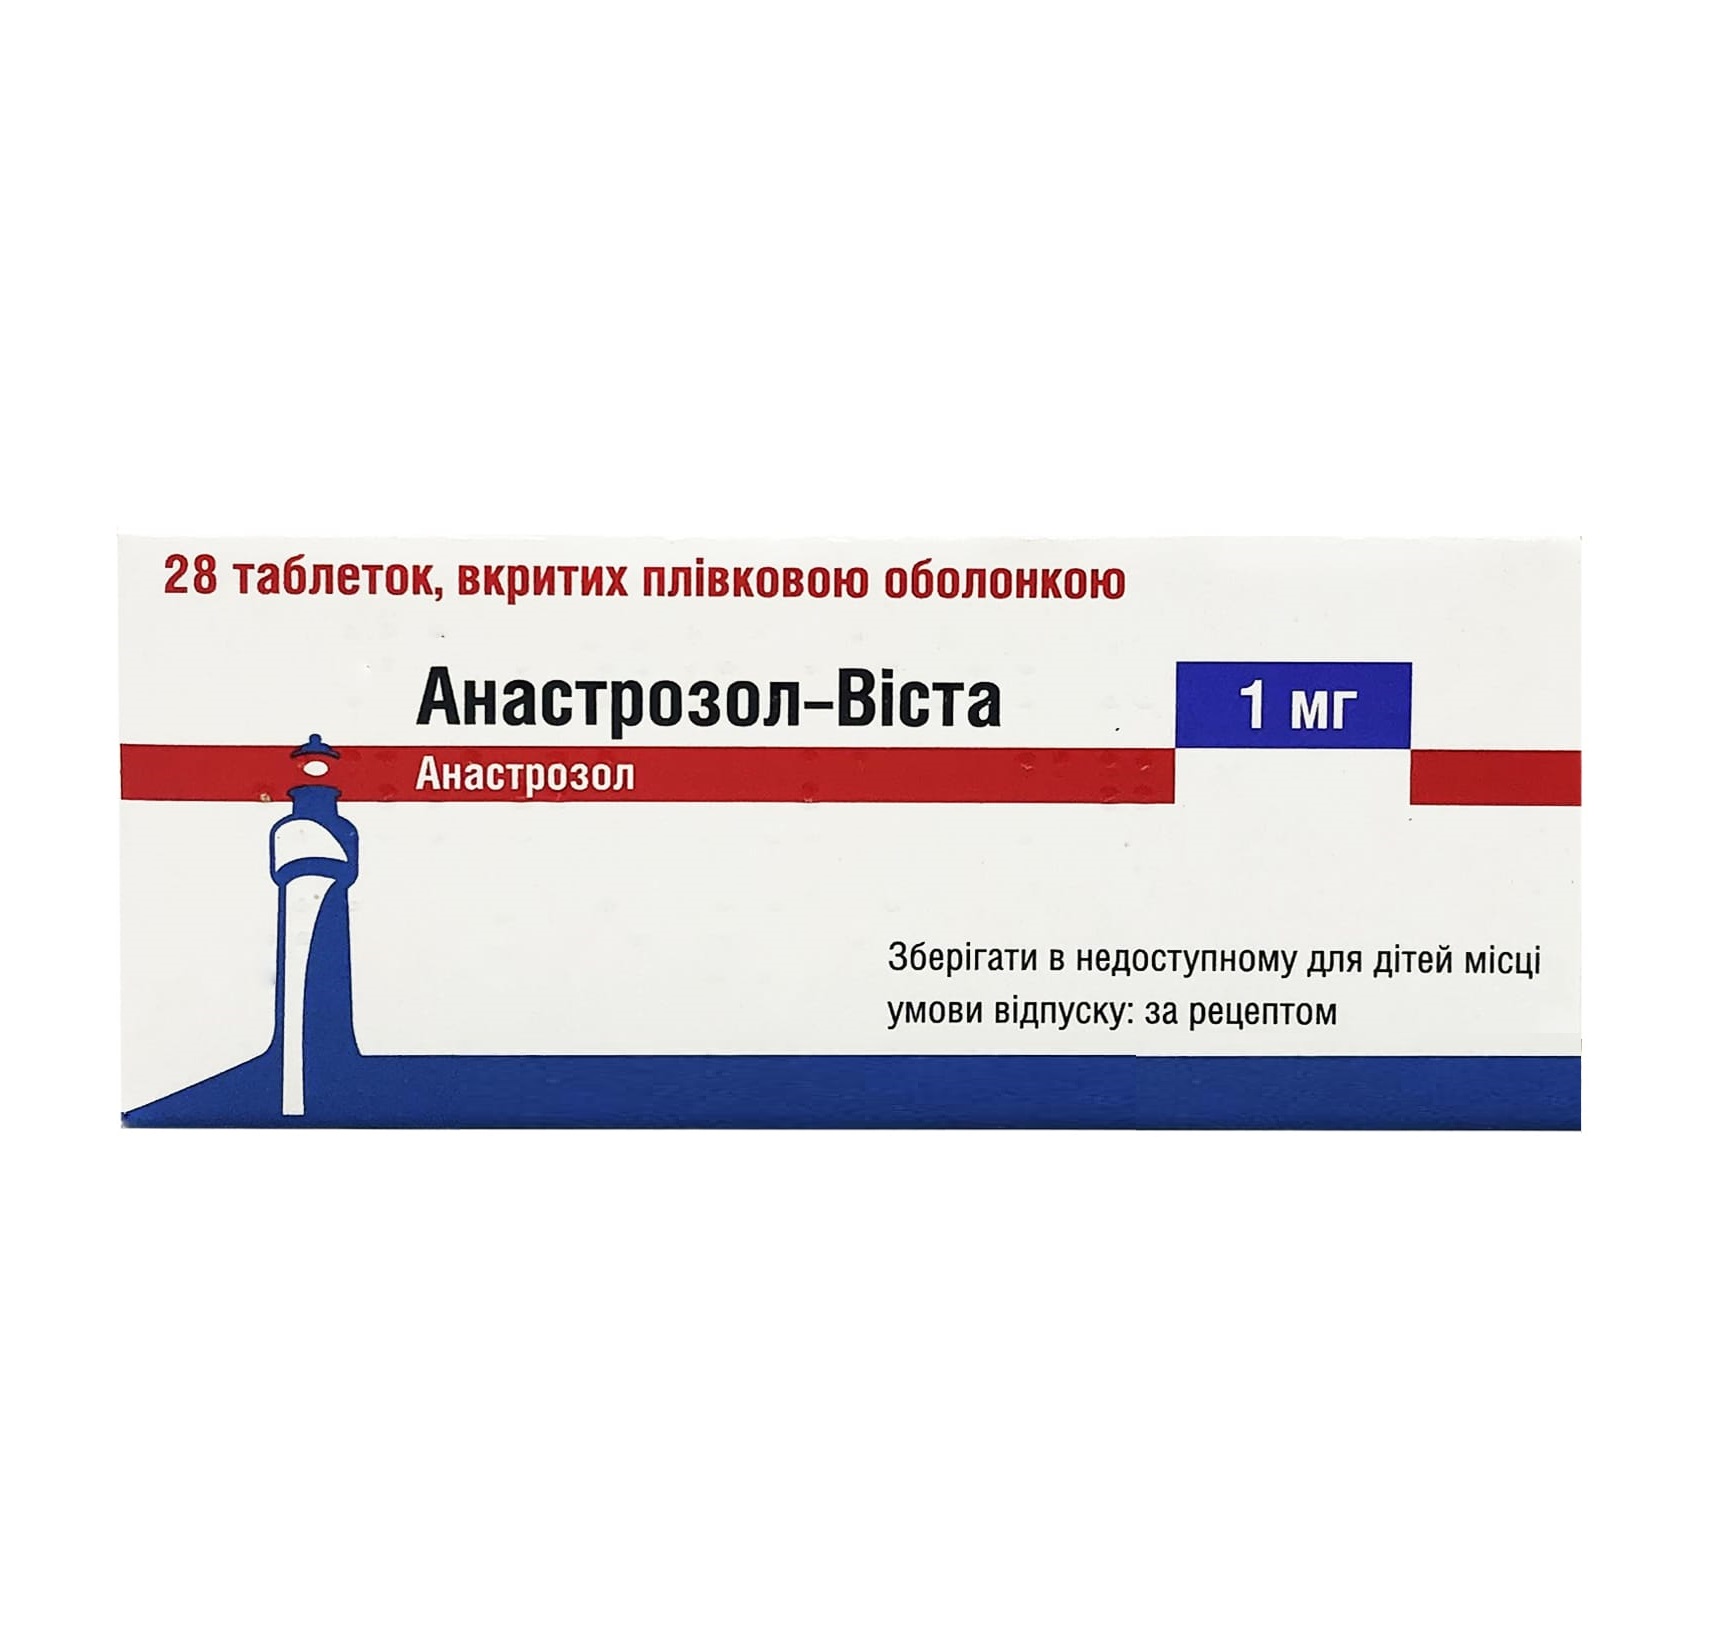 Анастрозол представляет собой антиэстрогеновый препарат, который выпускается в форме таблеток Препарат помогает избежать гинекомастии, избавляет от отеков и других побочных негативных эффектов, которые часто сопровождают курс приема анаболиков